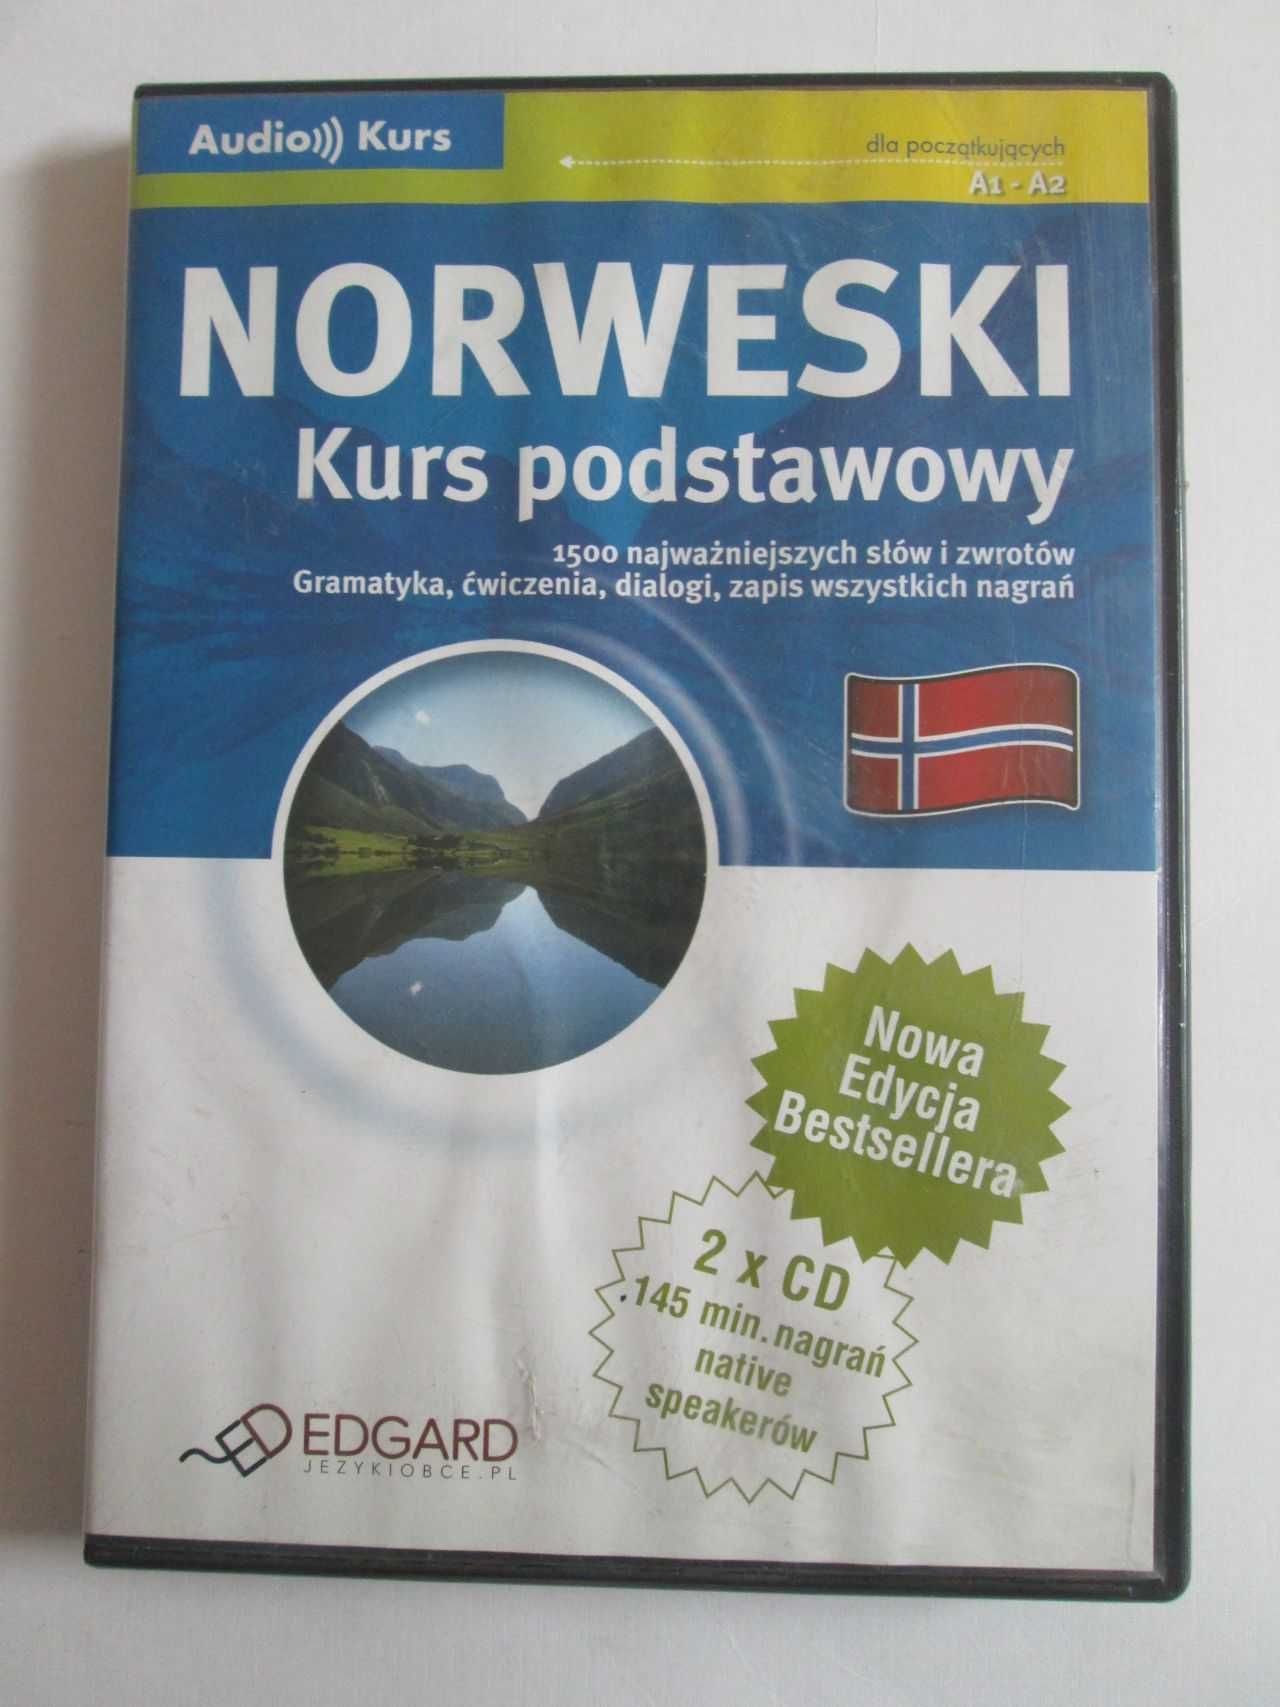 Kurs podstawowy języka norweskiego